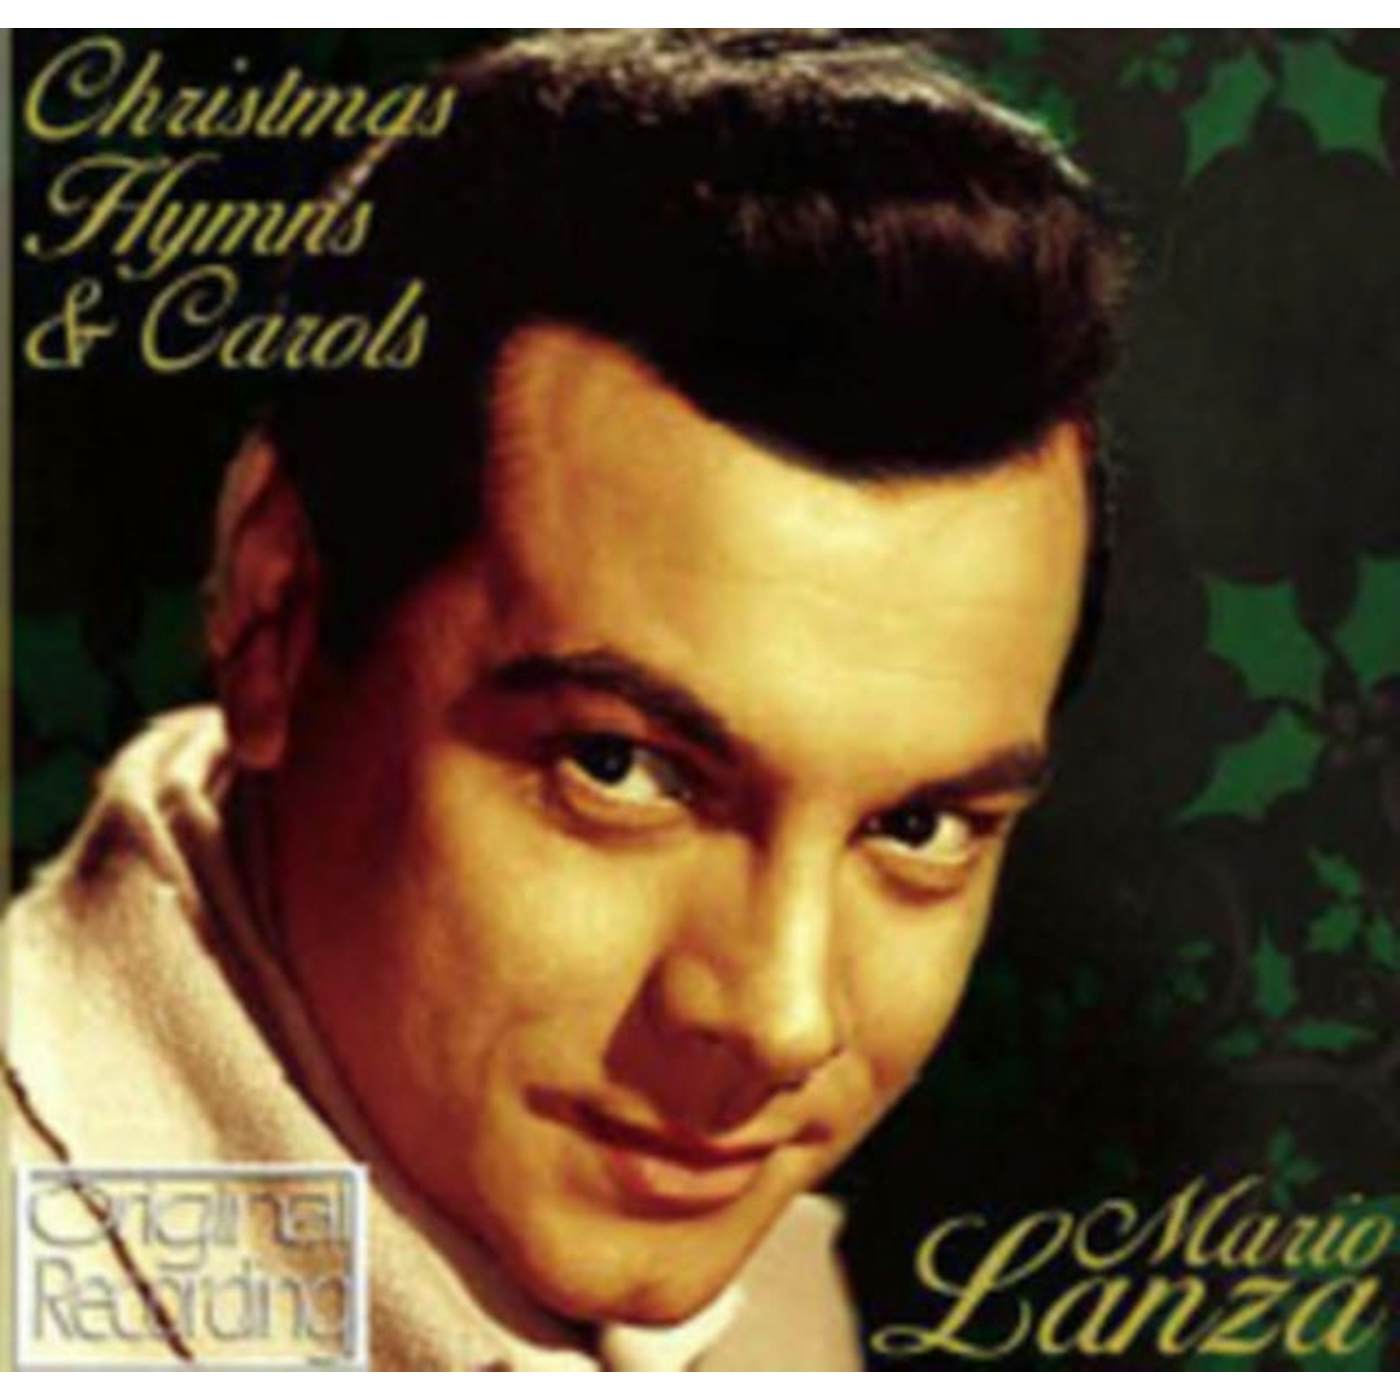 Mario Lanza CD - Christmas Hymns And Carols